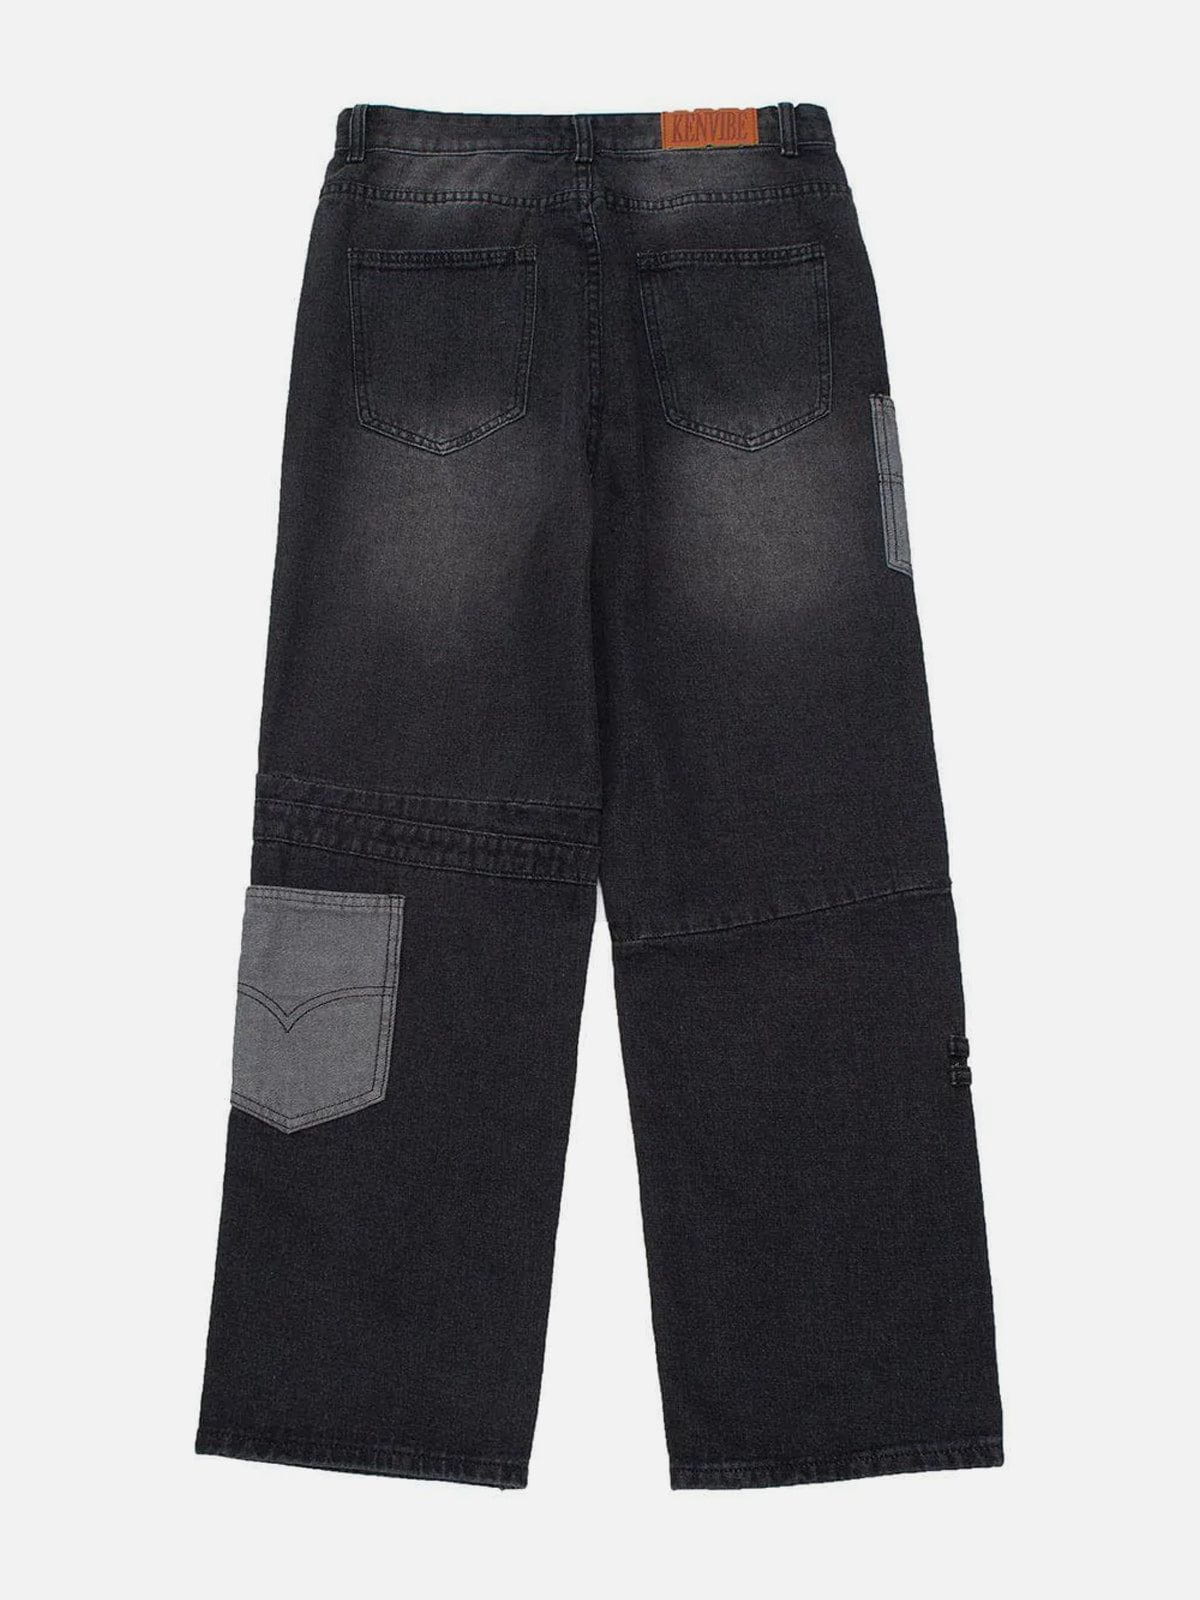 Eprezzy® - Side Pocket Trim Jeans Streetwear Fashion - eprezzy.com